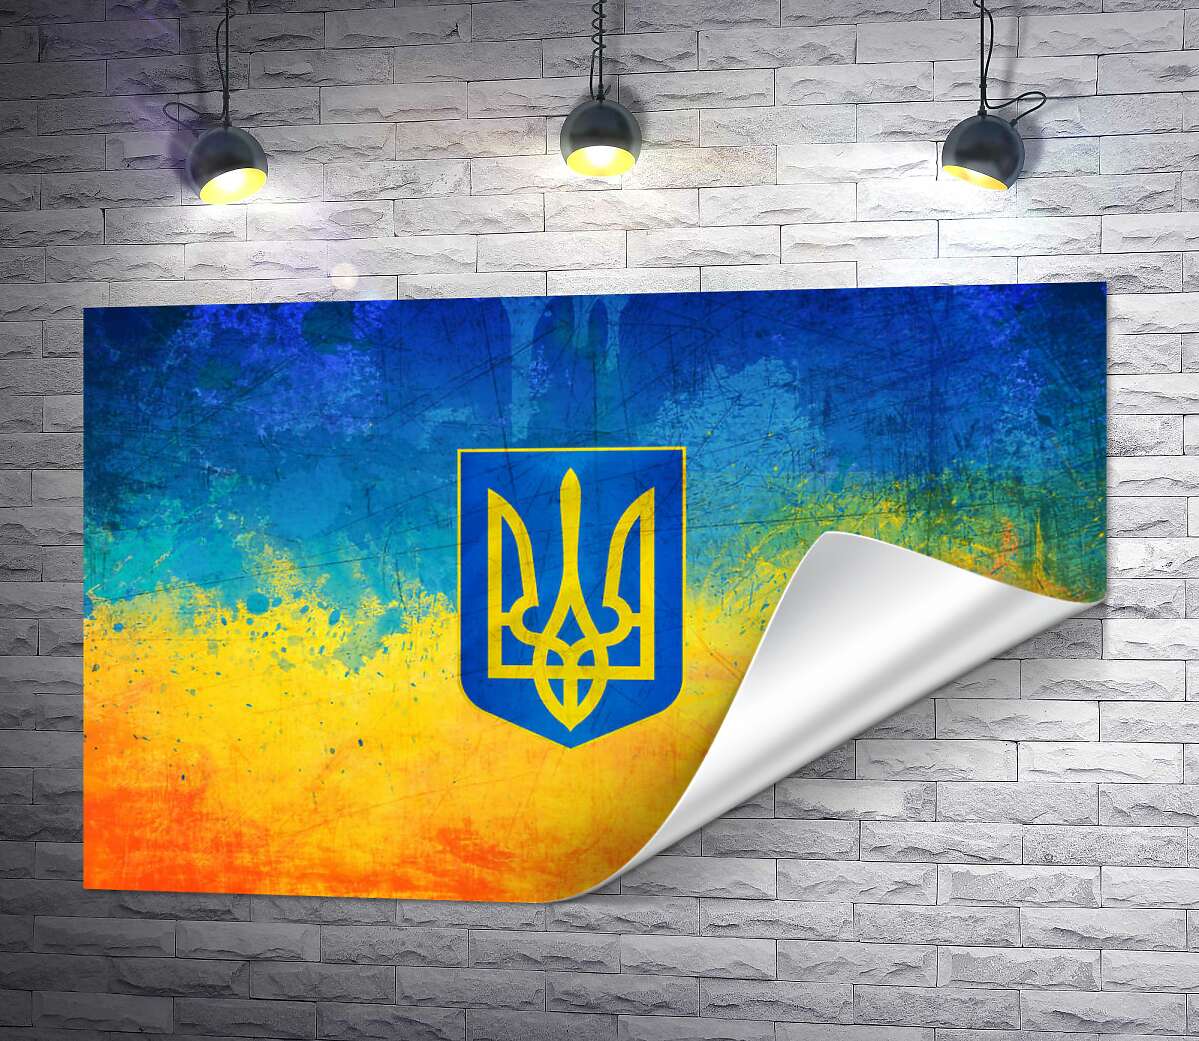 друк Державний герб України на жовто-блакитному фоні